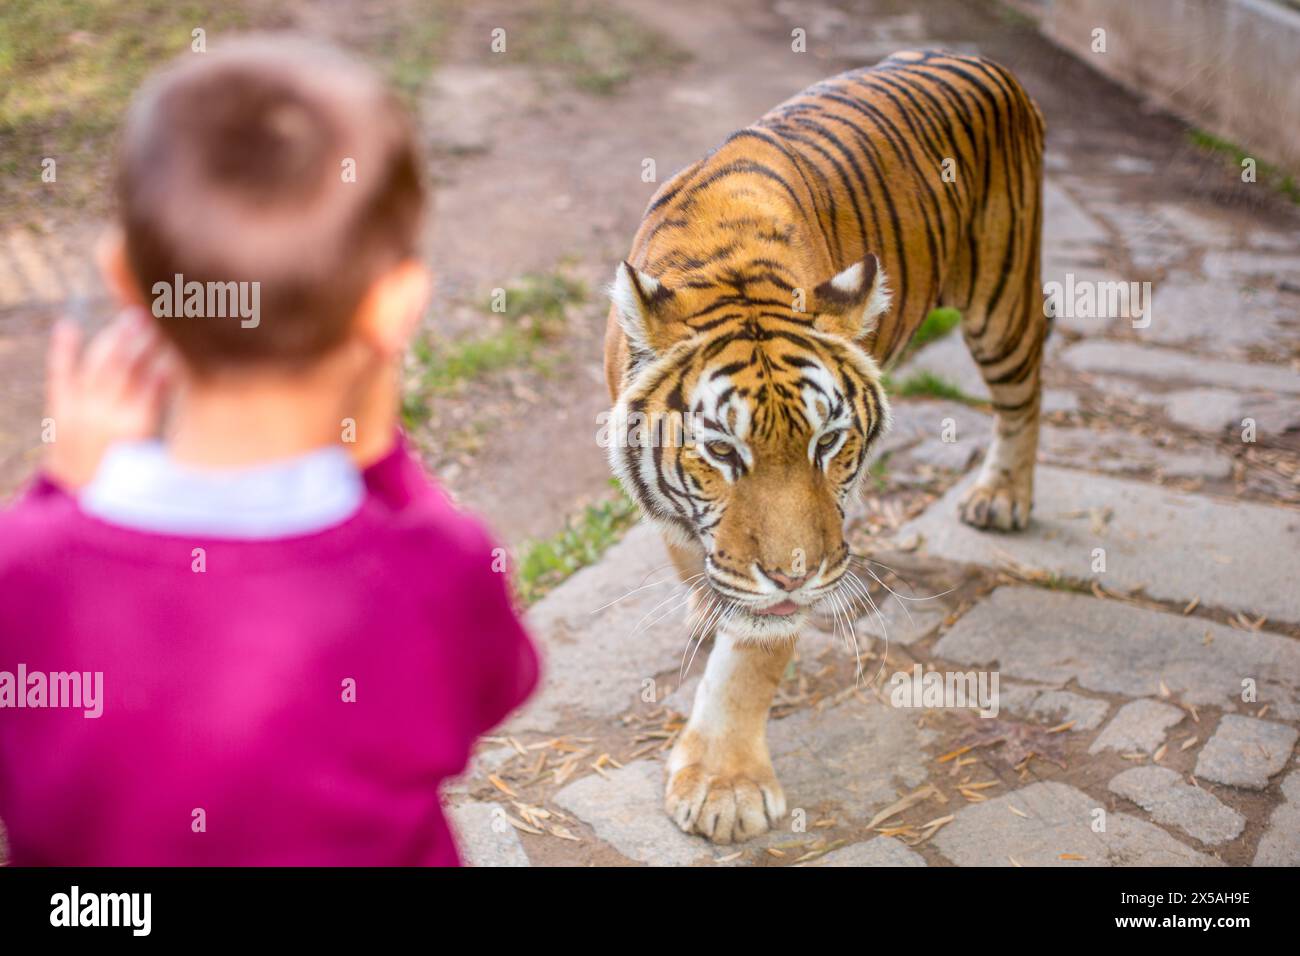 Un jeune garçon regarde un tigre de près à travers le verre protecteur. Banque D'Images